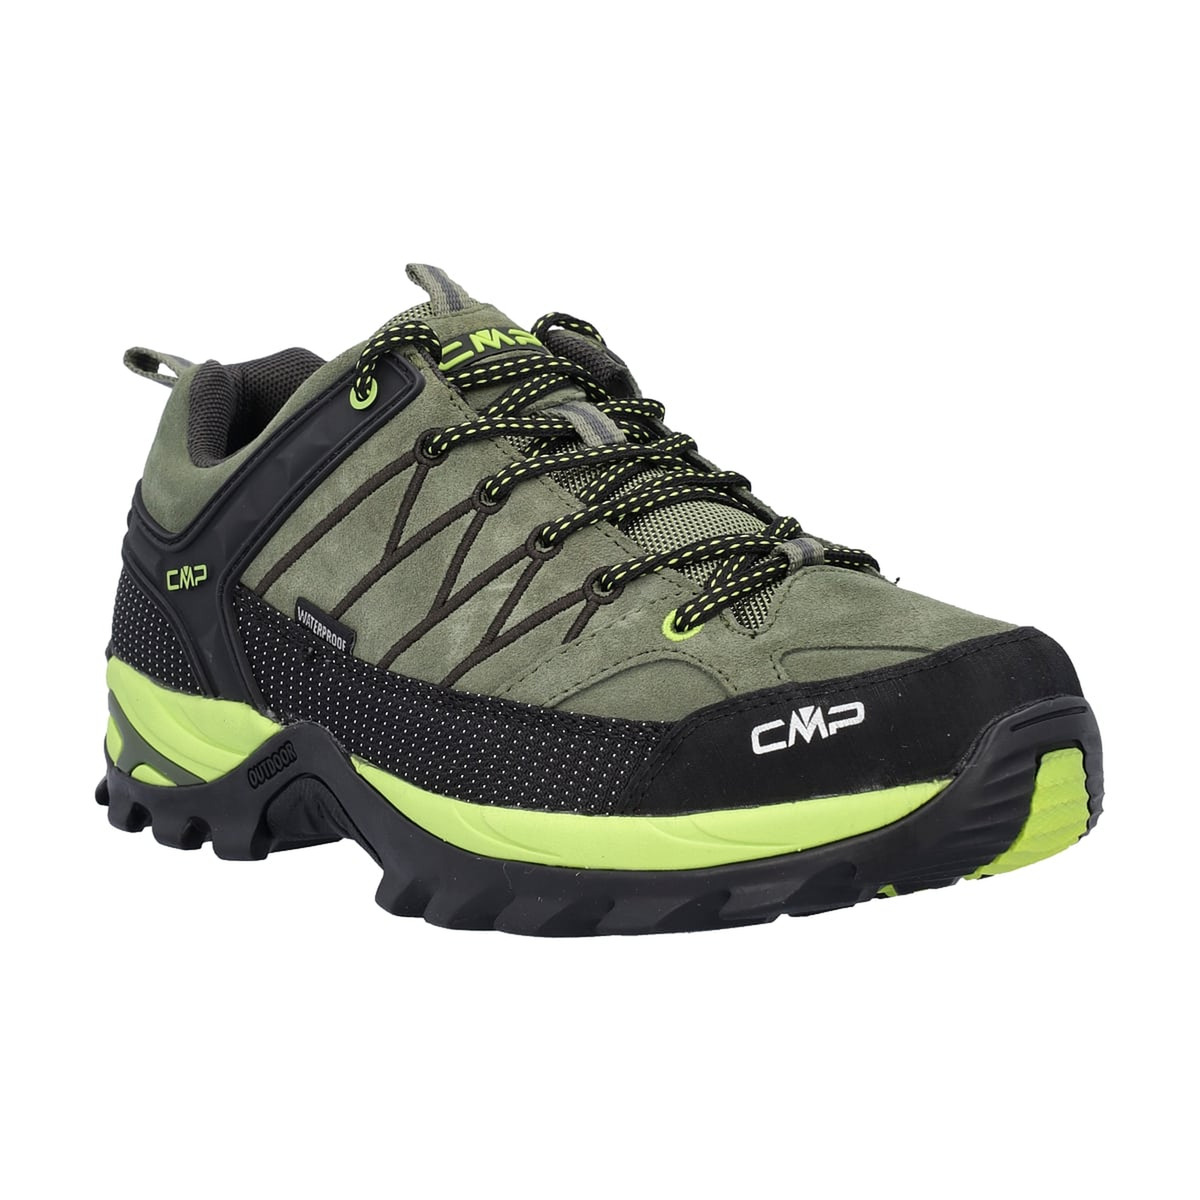 CMP Herren Rigel Low Trekking Schuhe WP 3Q13247 kaki-acido | eBay